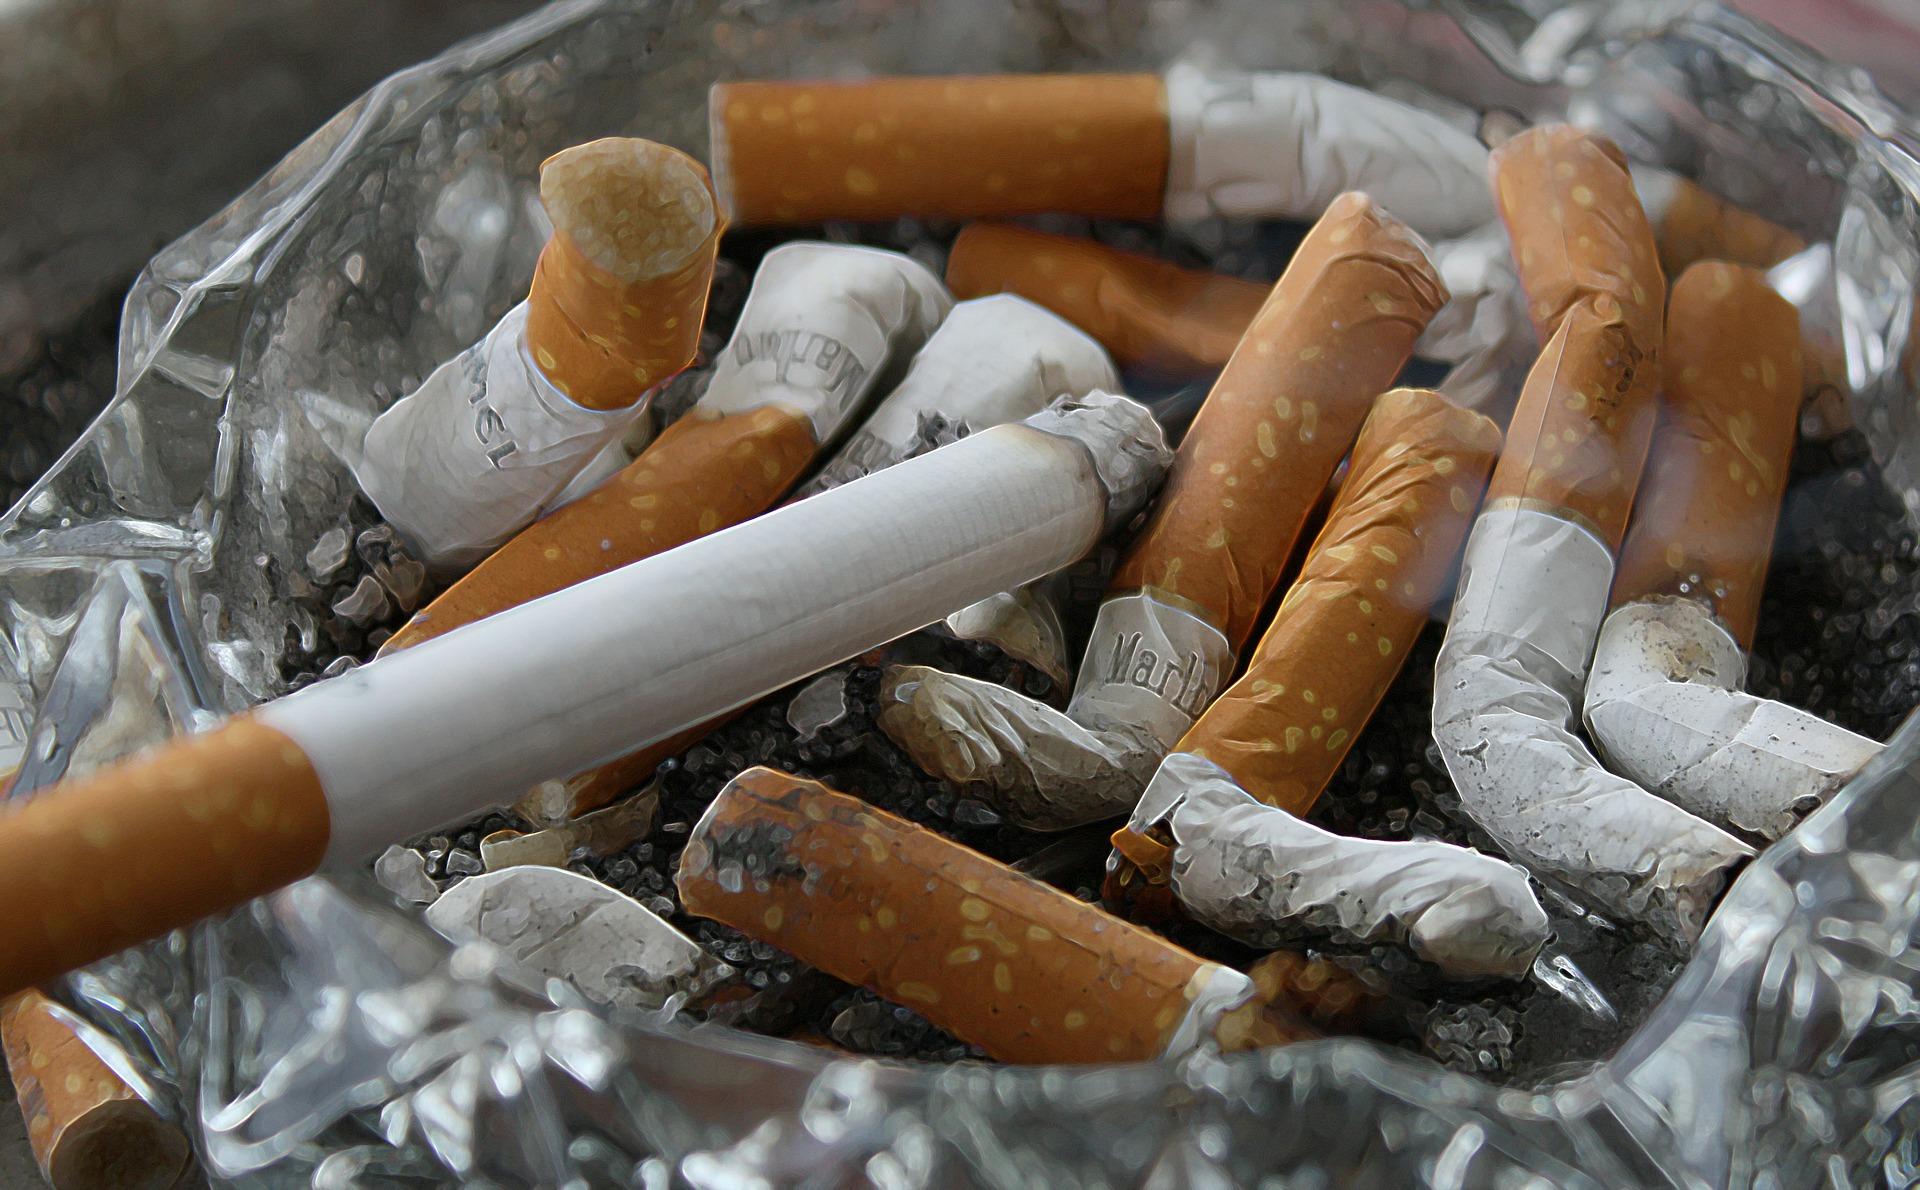 Científicos franceses investigan si la nicotina protege contra el Covid-19